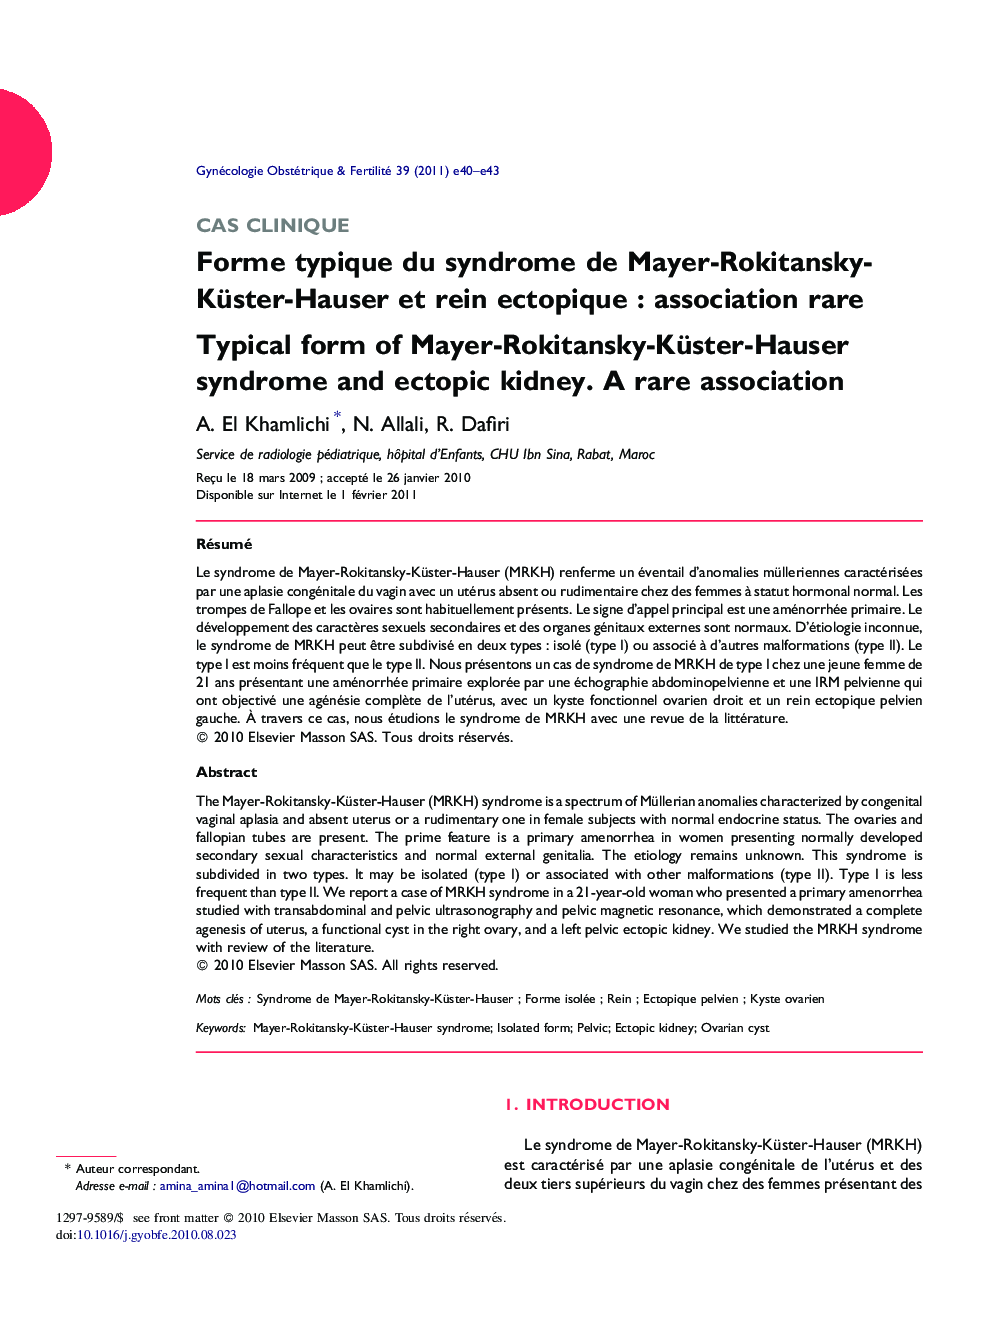 Forme typique du syndrome de Mayer-Rokitansky-Küster-Hauser et rein ectopique : association rare